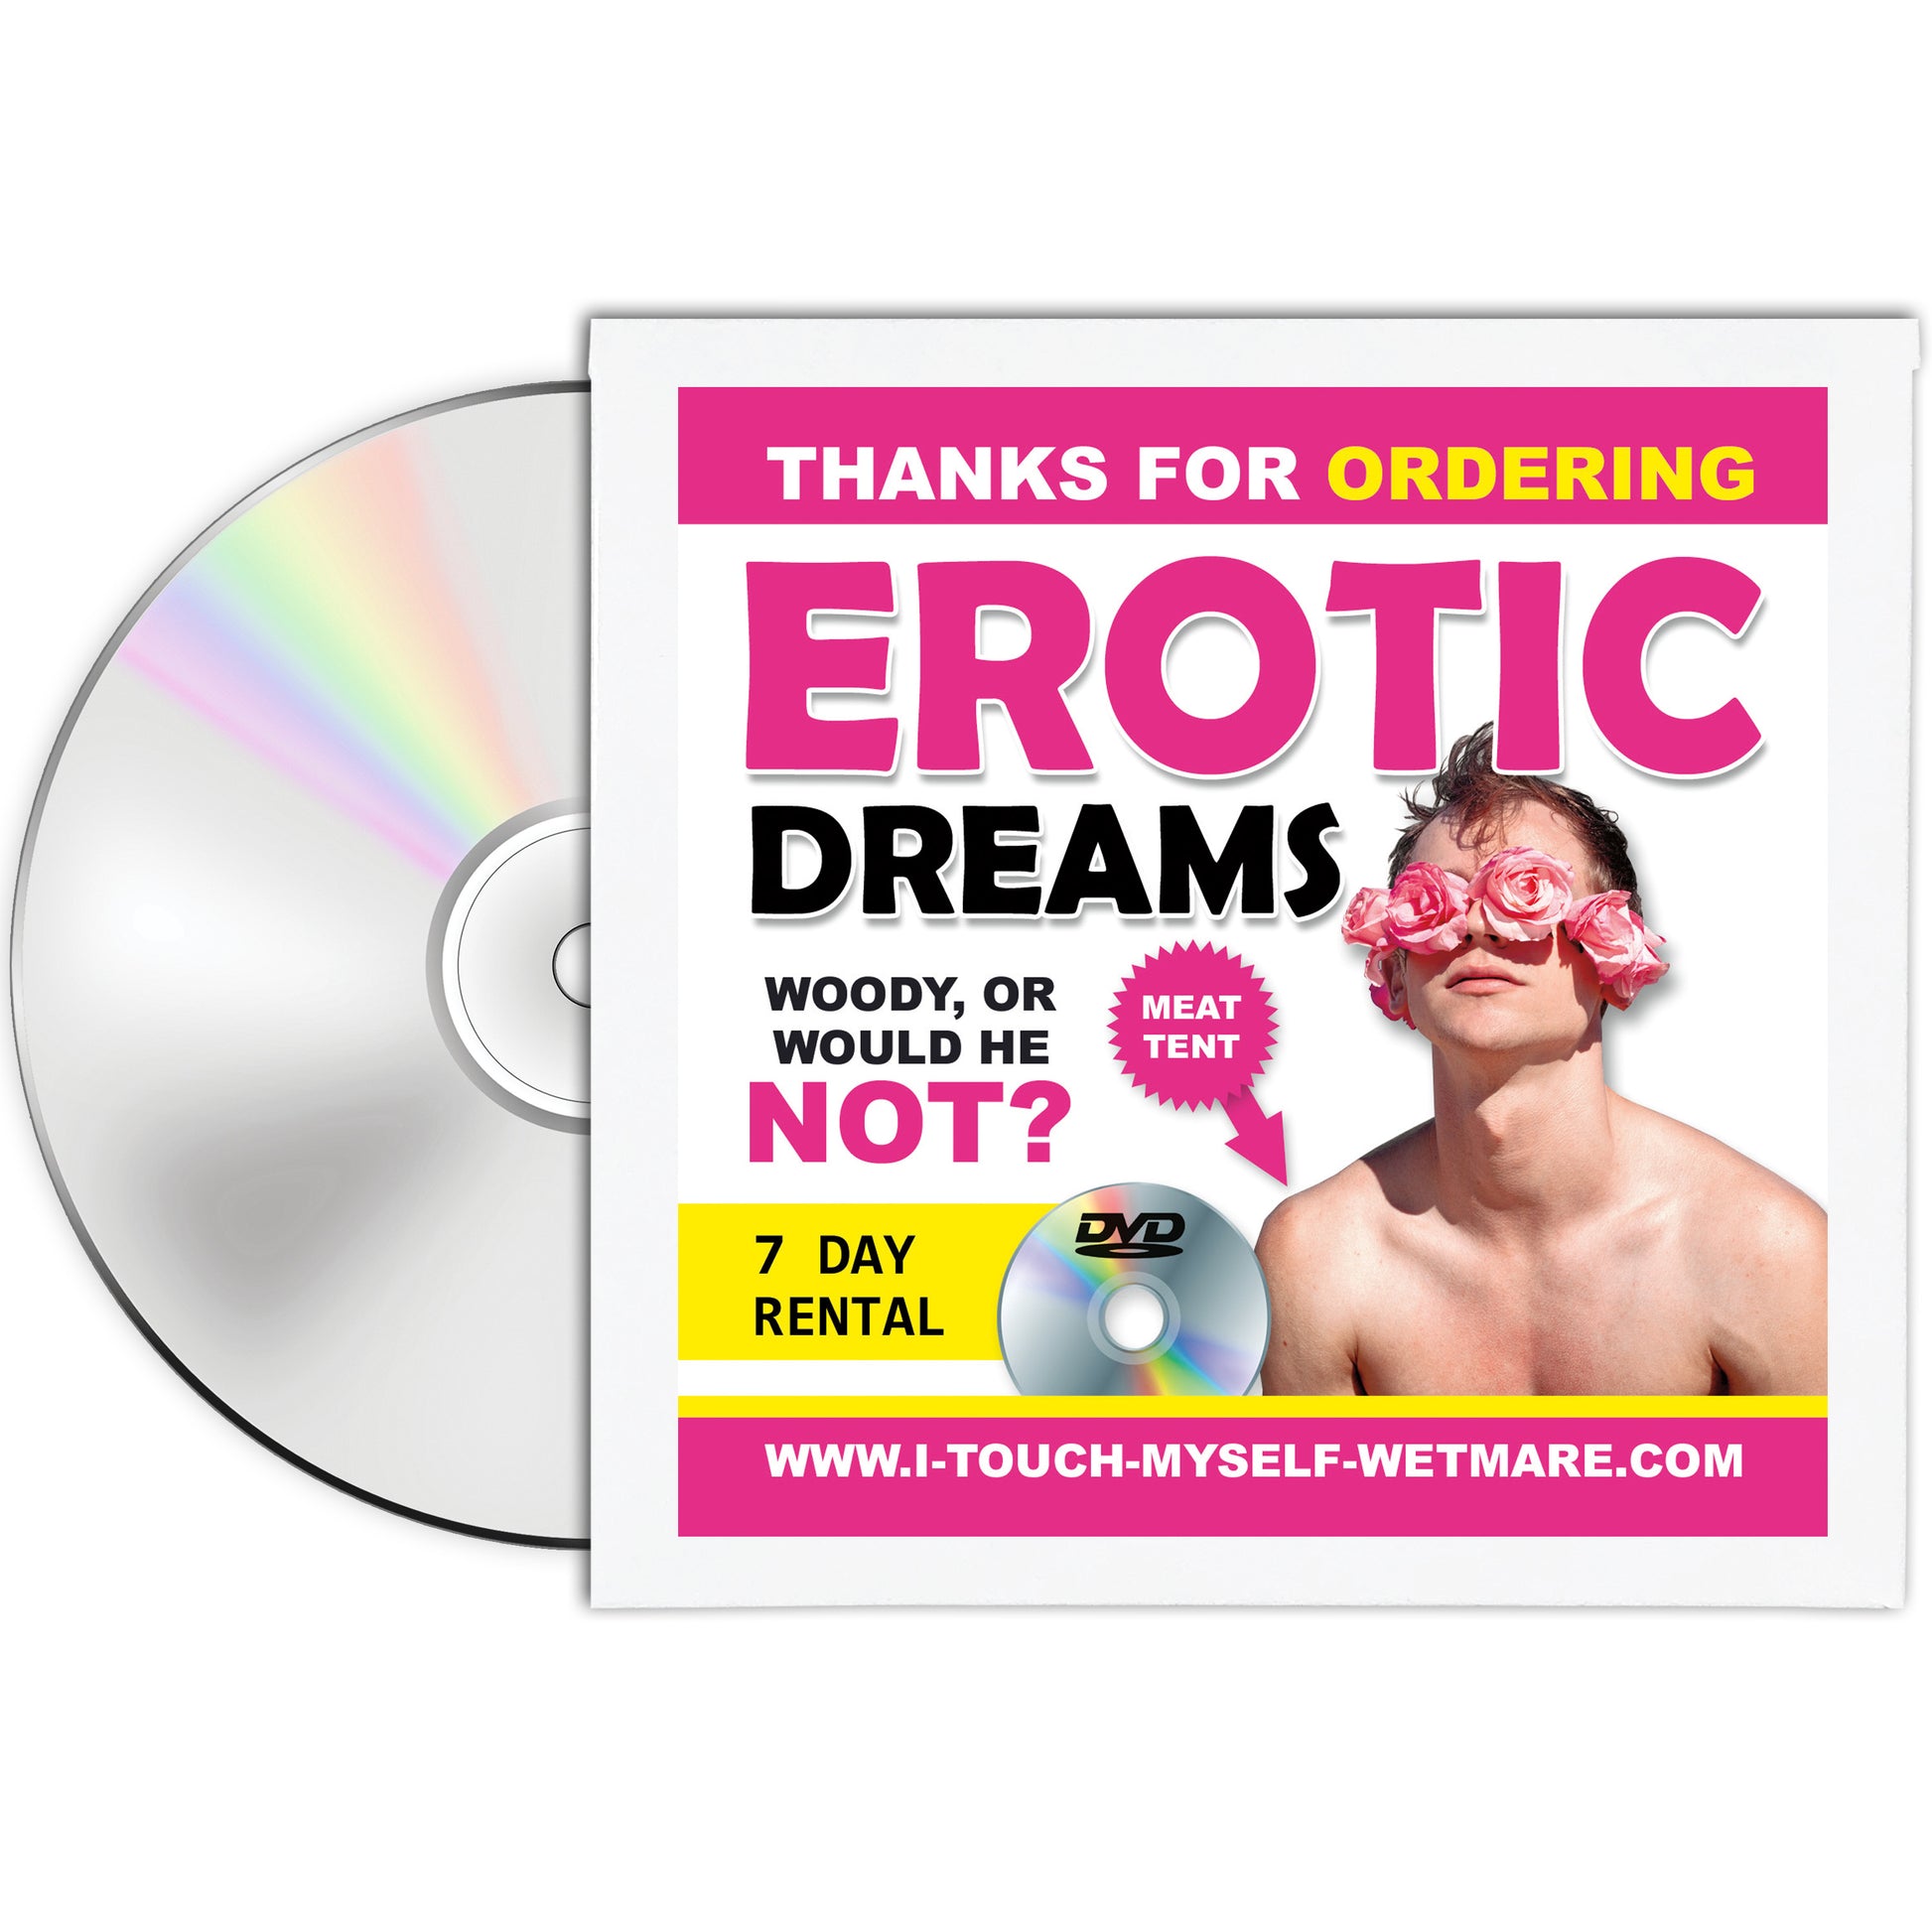 Erotic Dreams Mail Prank Joke